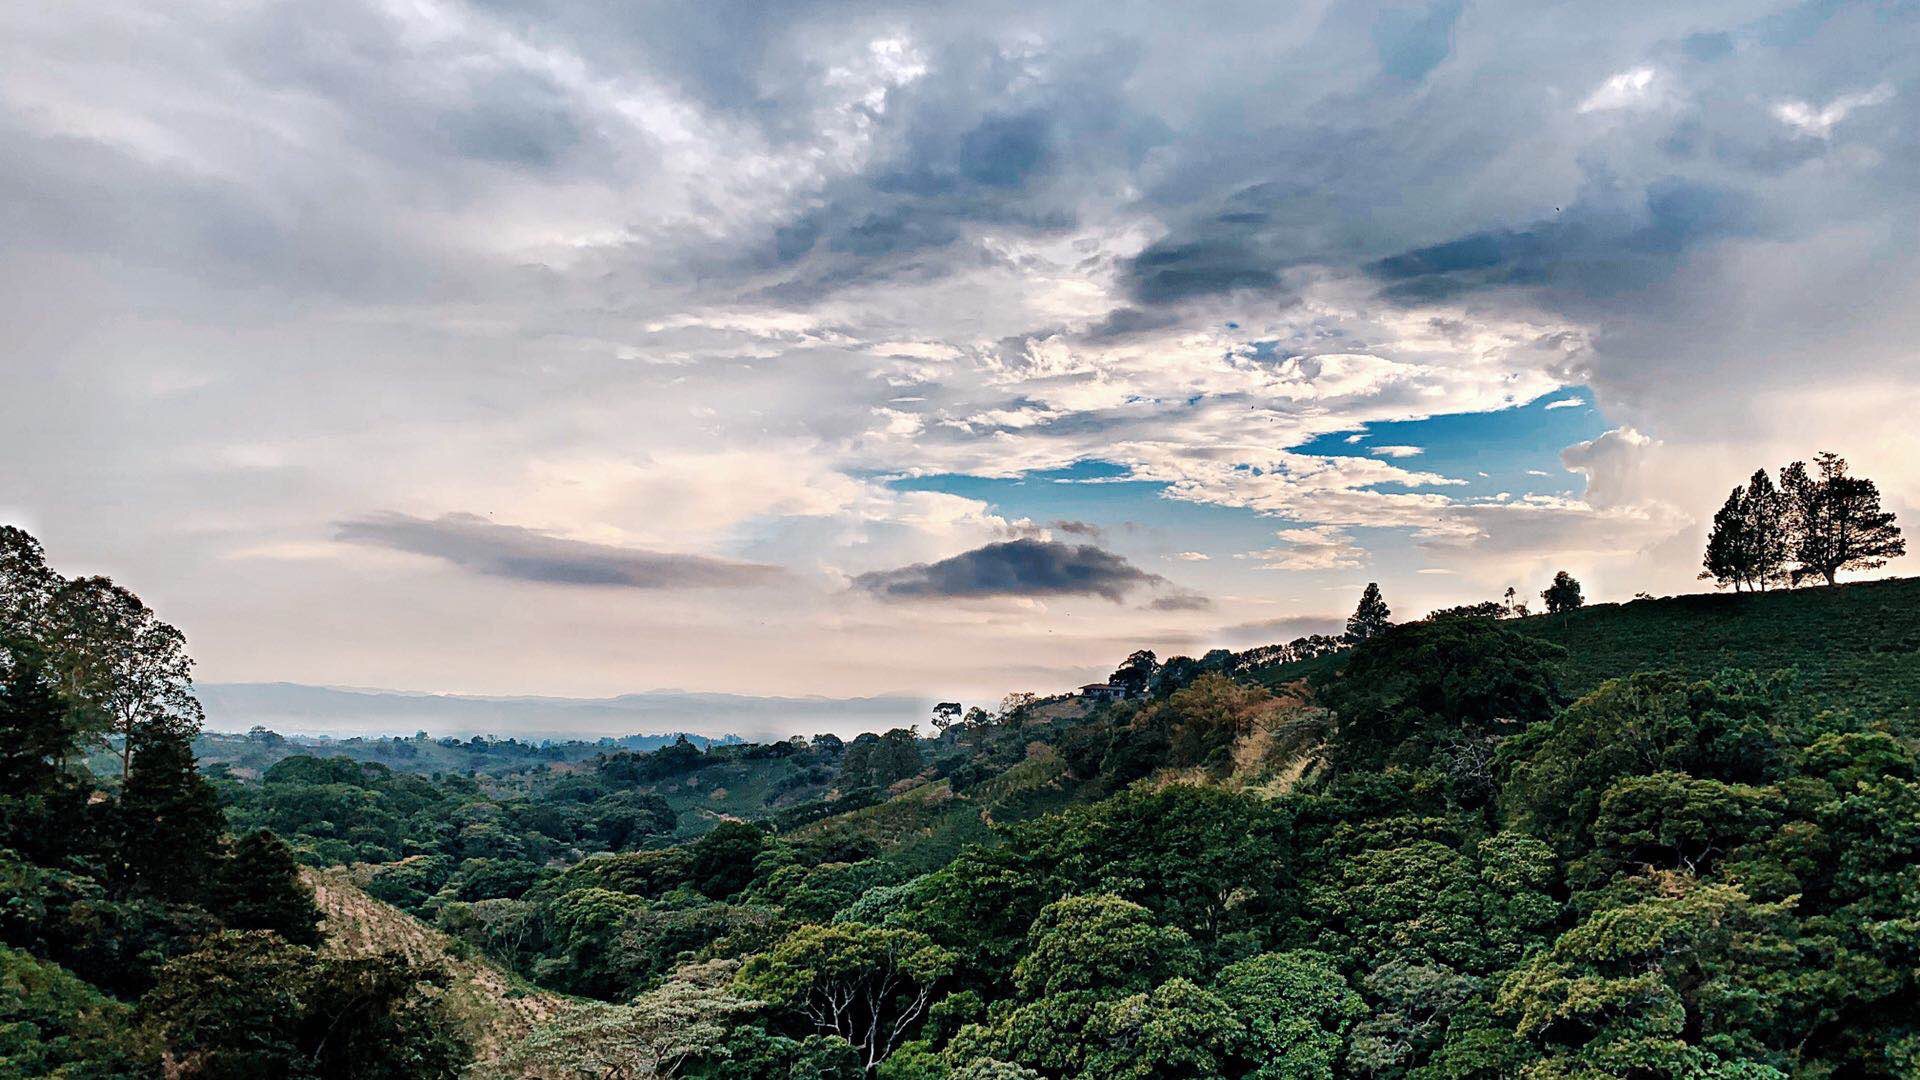 哥斯达黎加首都附近的星巴克咖啡农场 风景绝佳